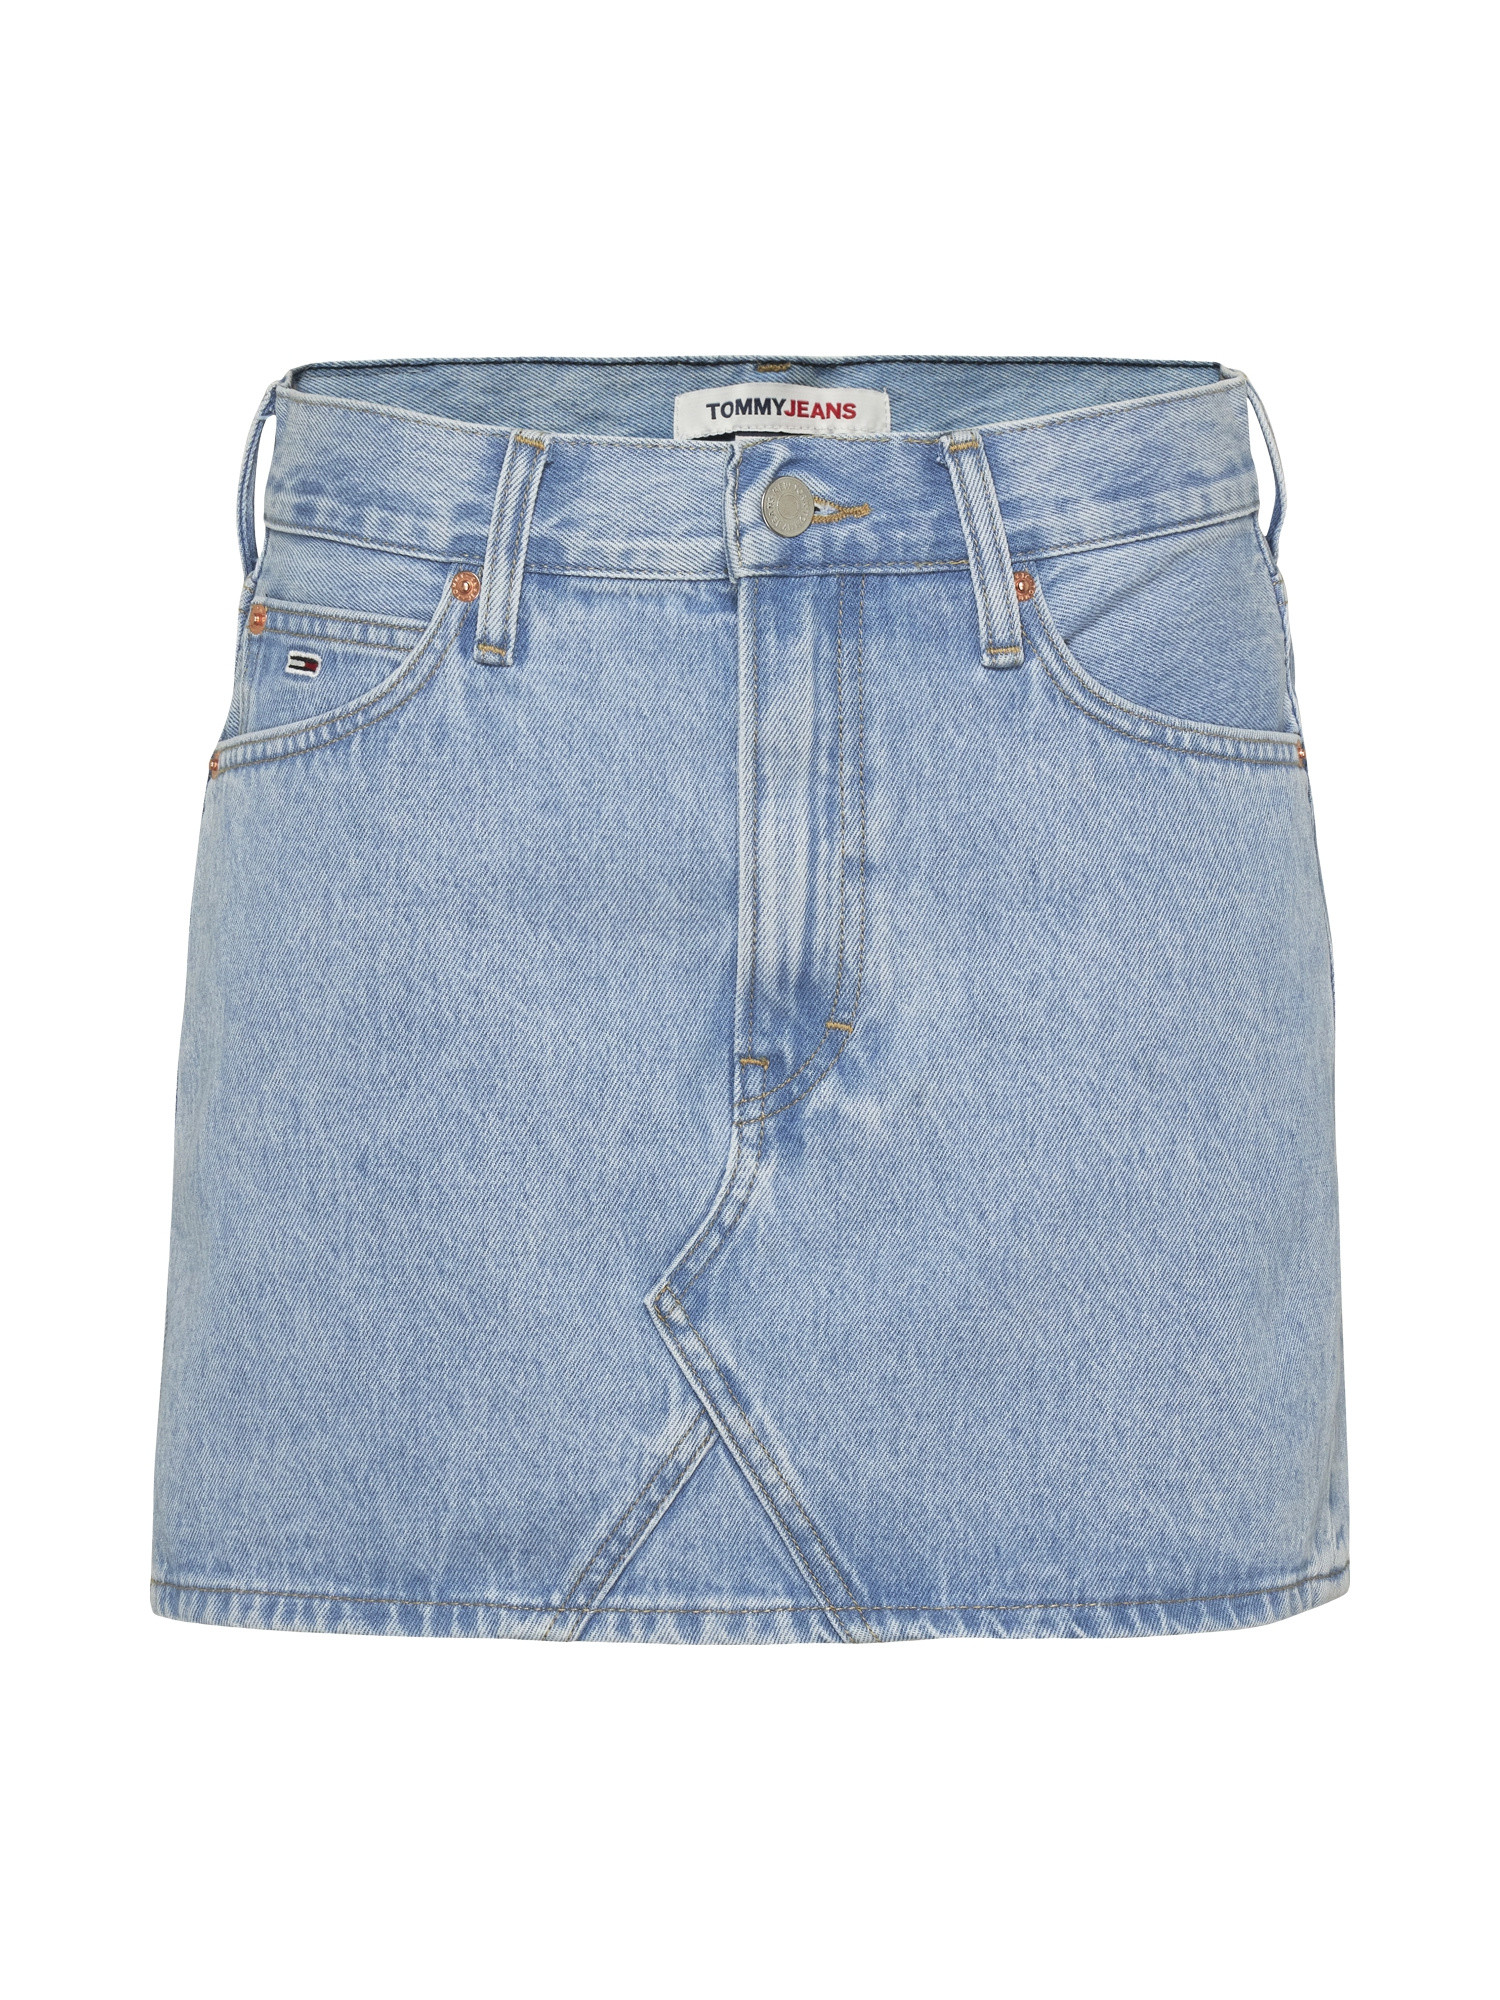 Tommy Jeans - Five-pocket denim miniskirt, Denim, large image number 0